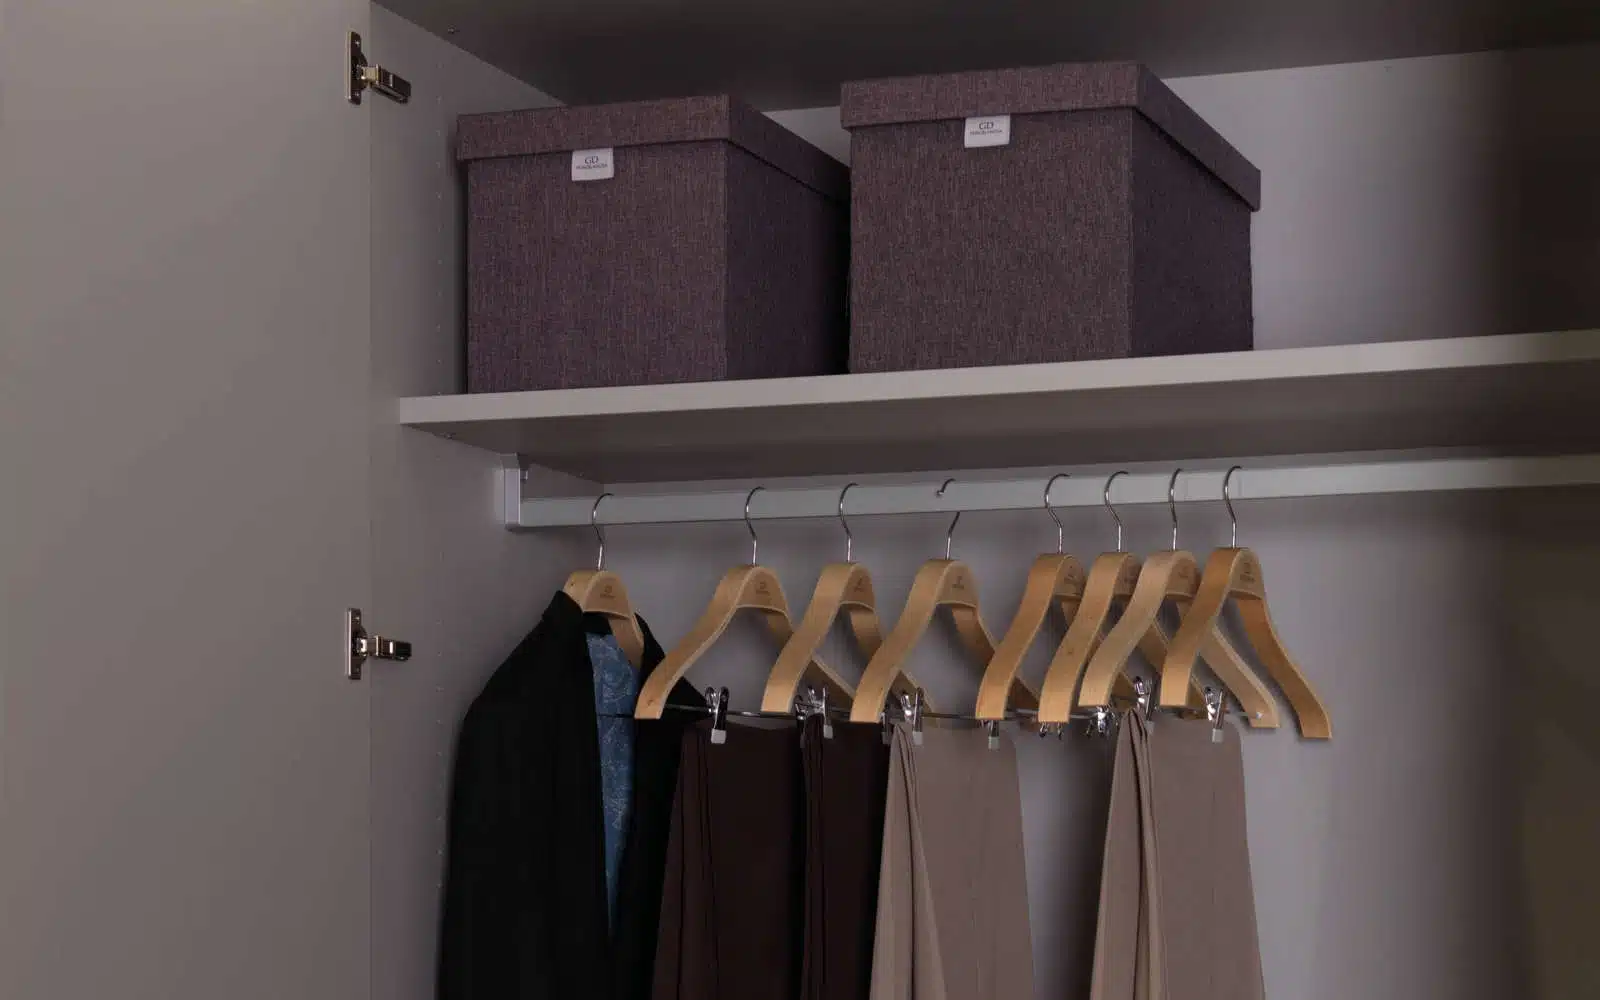 Et billede af en garderobe i grå laminat med to skydedøre og en hængestang til tøj. Garderoben har en enkel og moderne stil med rene linjer og en glat overflade, Garderoben kan købes hos DOKK16, en møbelbutik beliggende i Aarhus, Jylland. DOKK16 er kendt for at tilbyde moderne og stilfulde møbler til overkommelige priser, opbevaringskasser